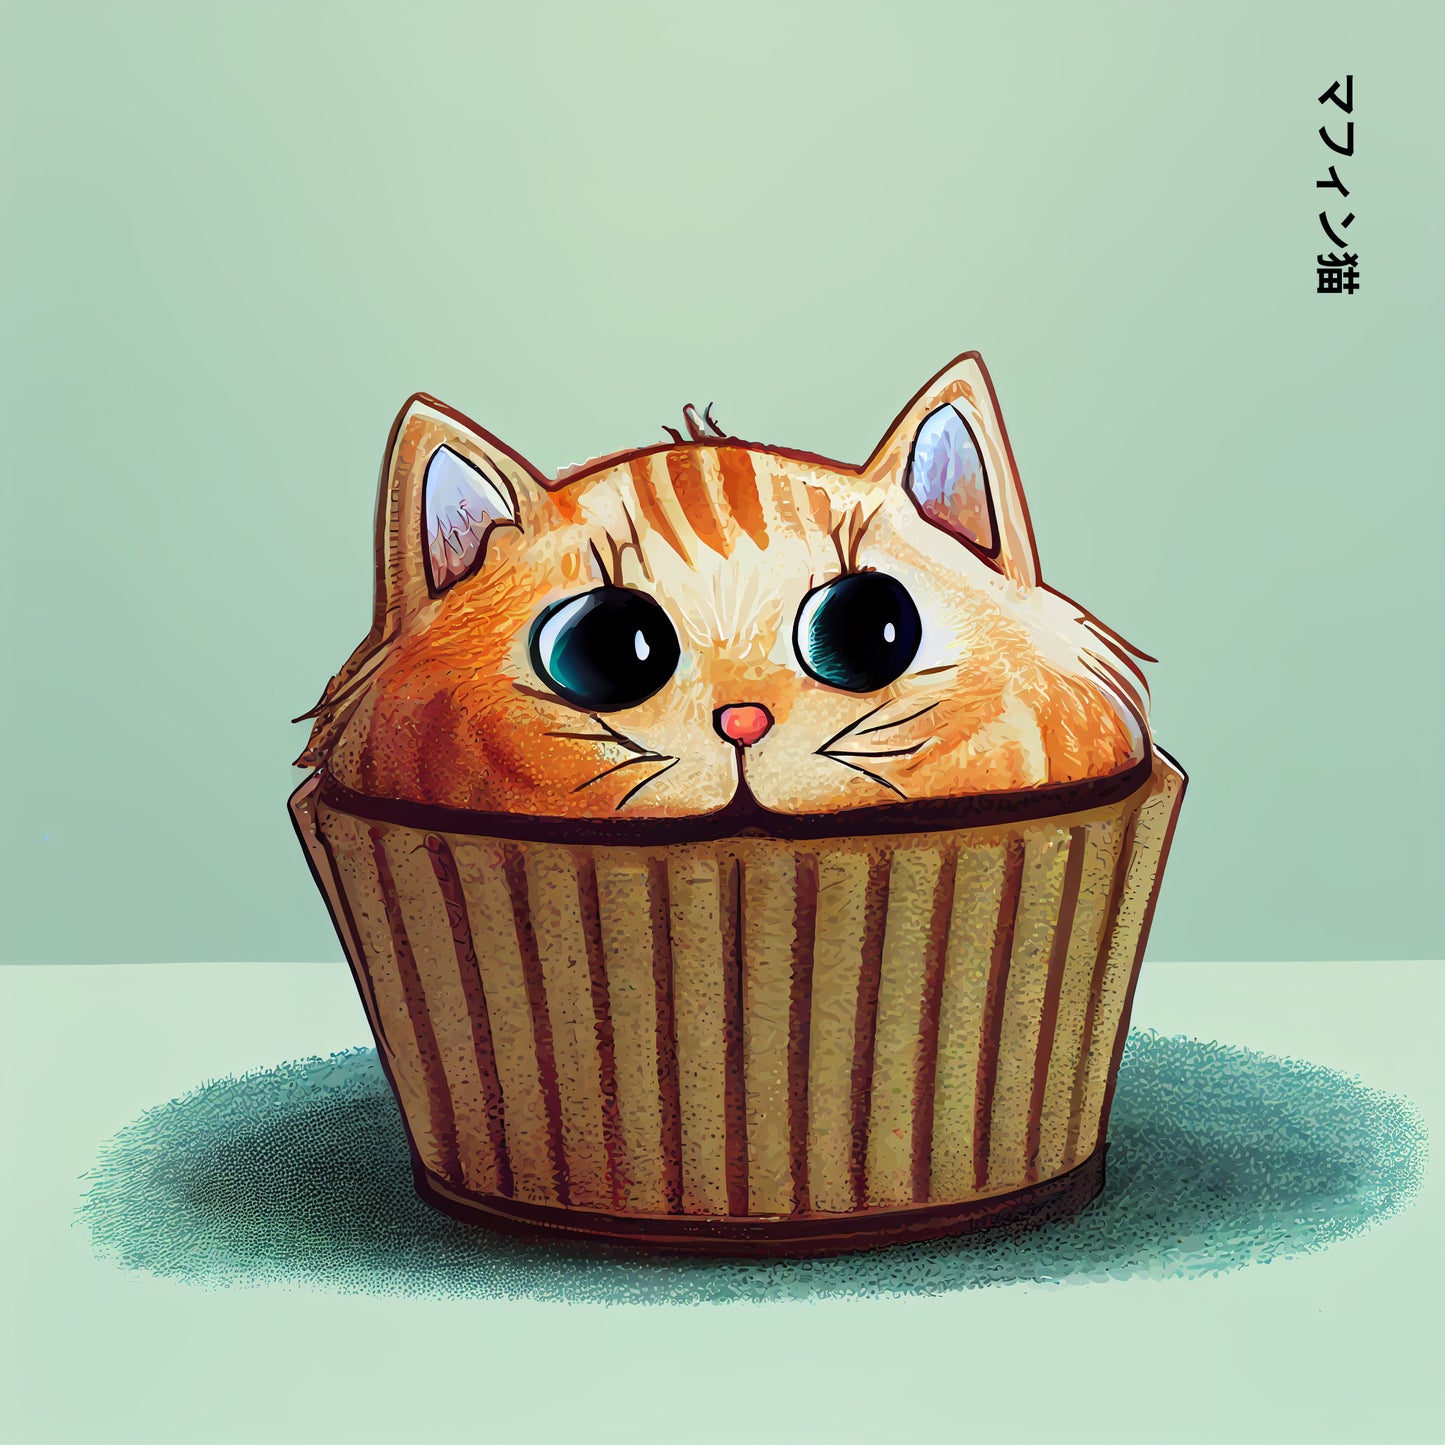 Ce tableau s'amuse à fusionner un muffin et un chat. La crème est remplacée par la tête d'un chat mignon et roux aux couleurs orange. Posé sur son moule marron, aux grands yeux rond, il est plein de vie et de personnalité. Le tout sur un fond bleu ajoute une touche de fraîcheur à l'ensemble